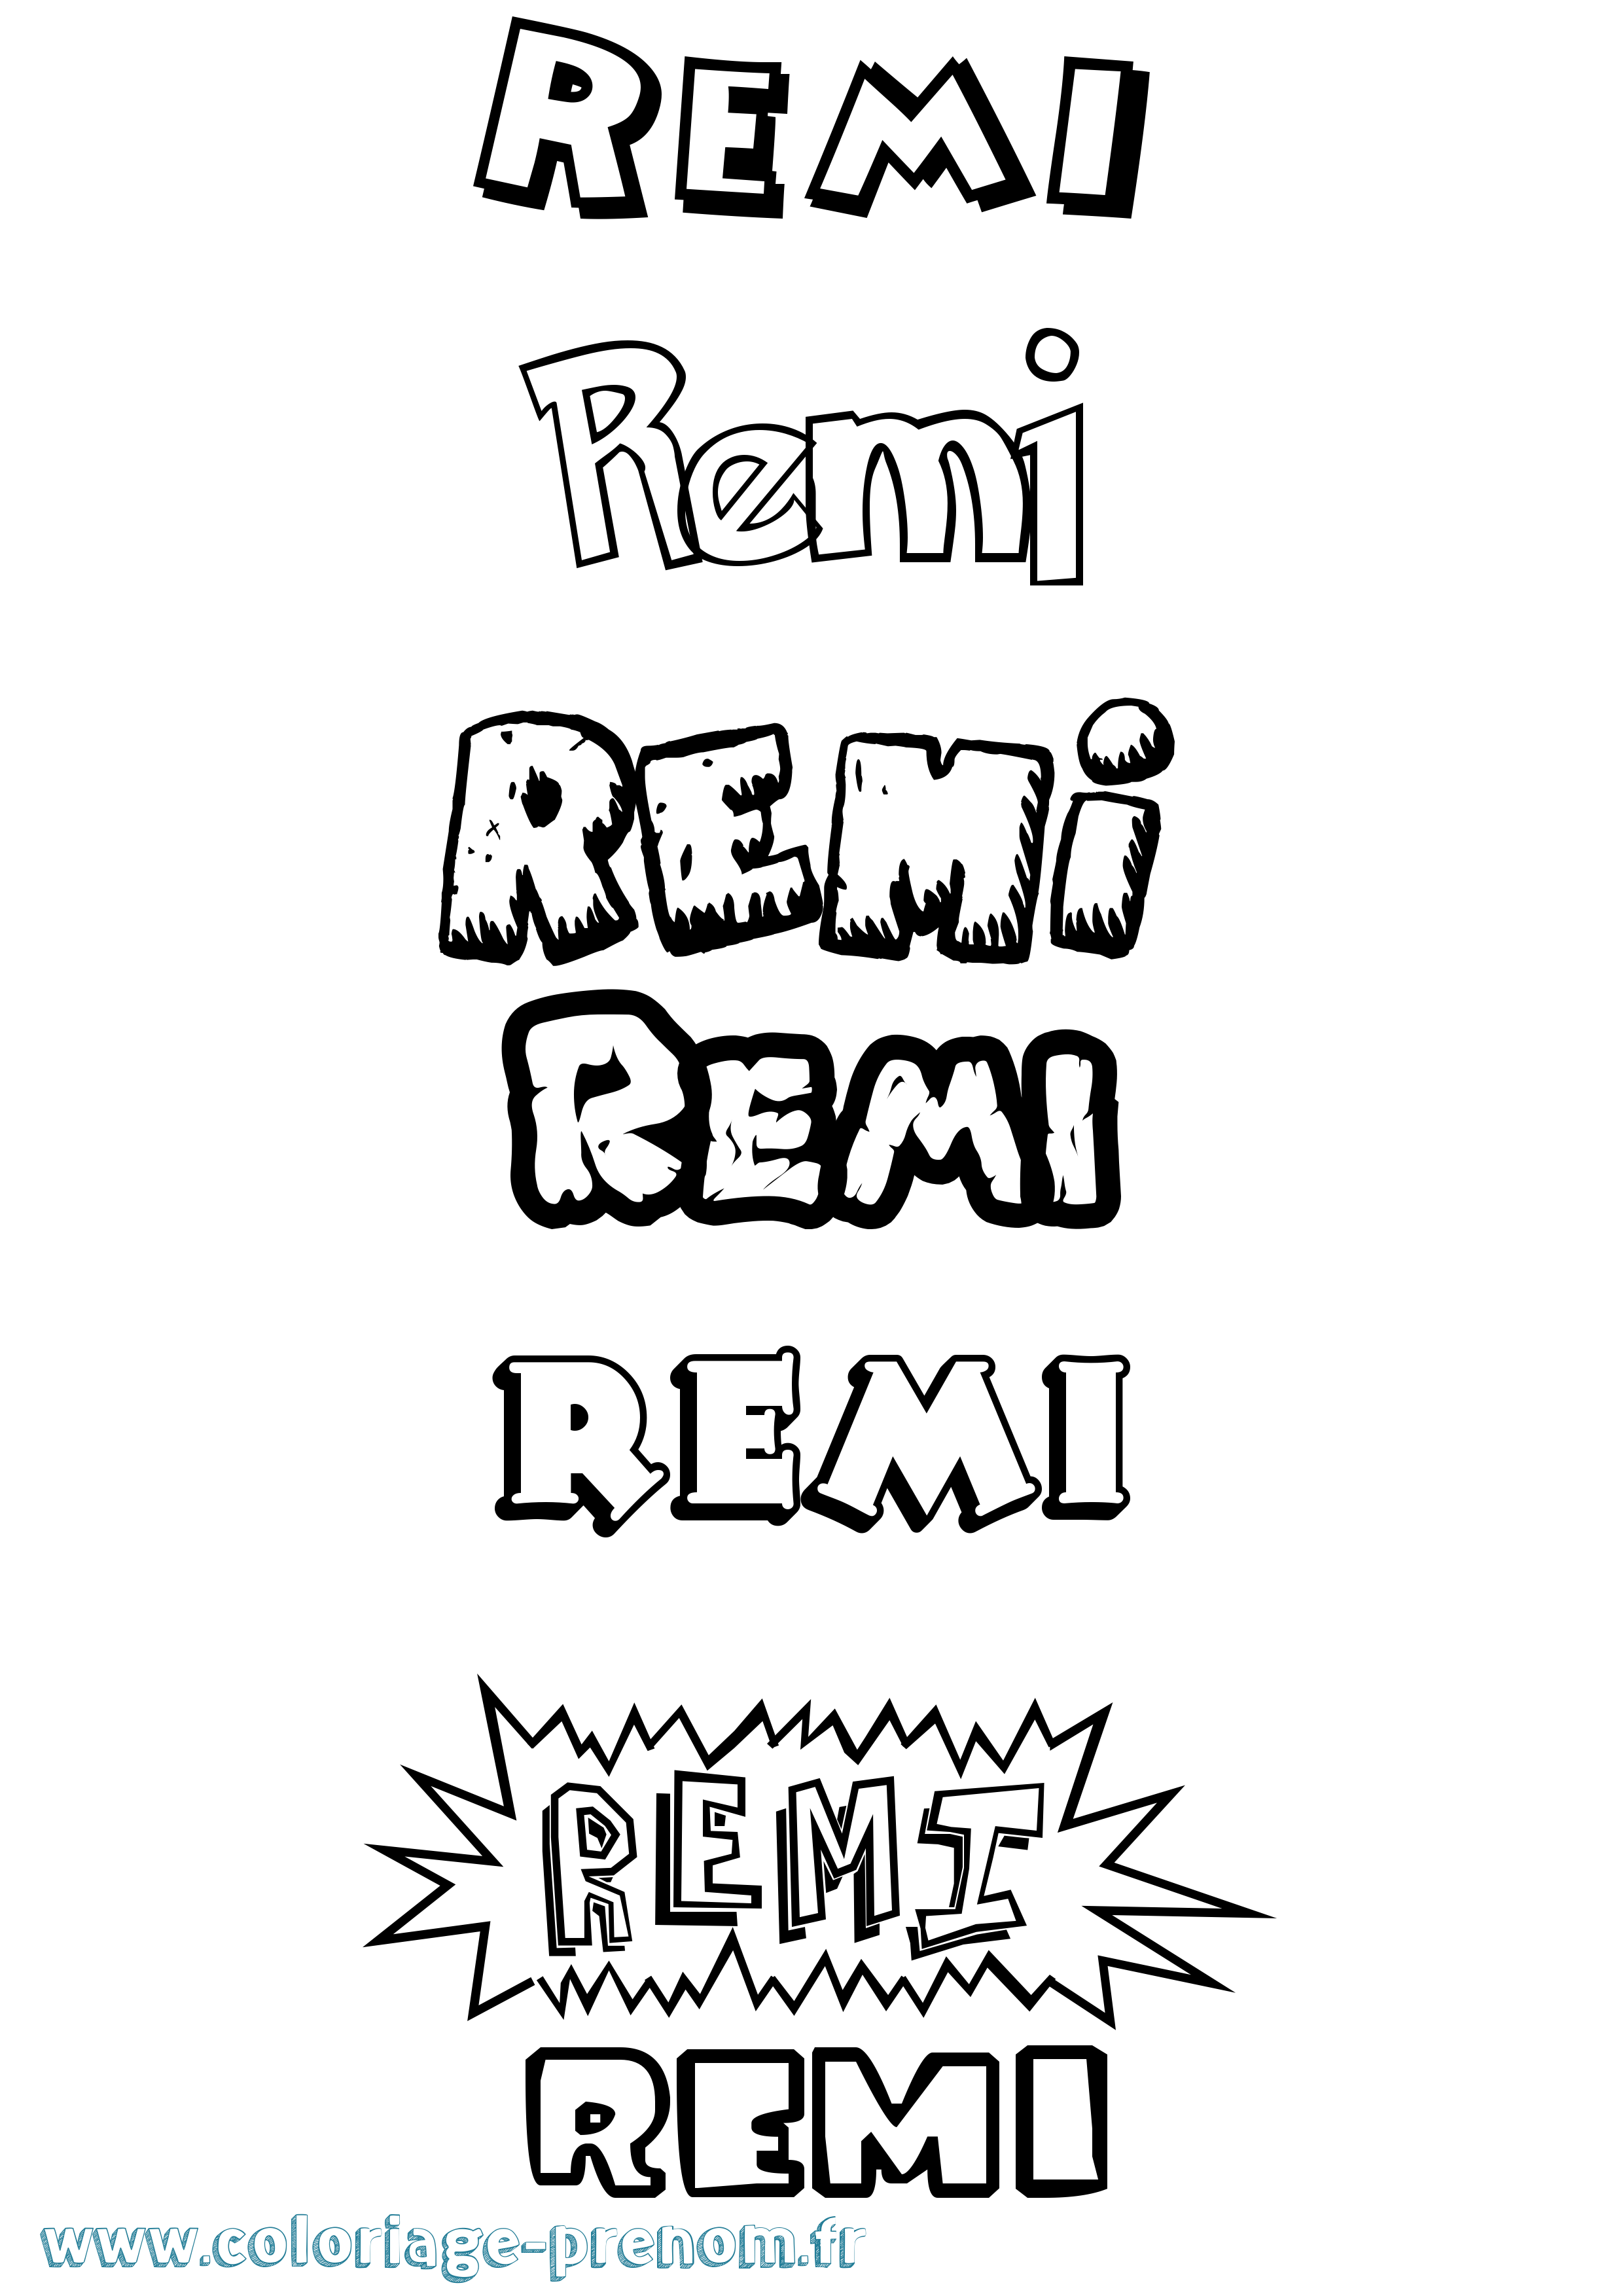 Coloriage prénom Remi